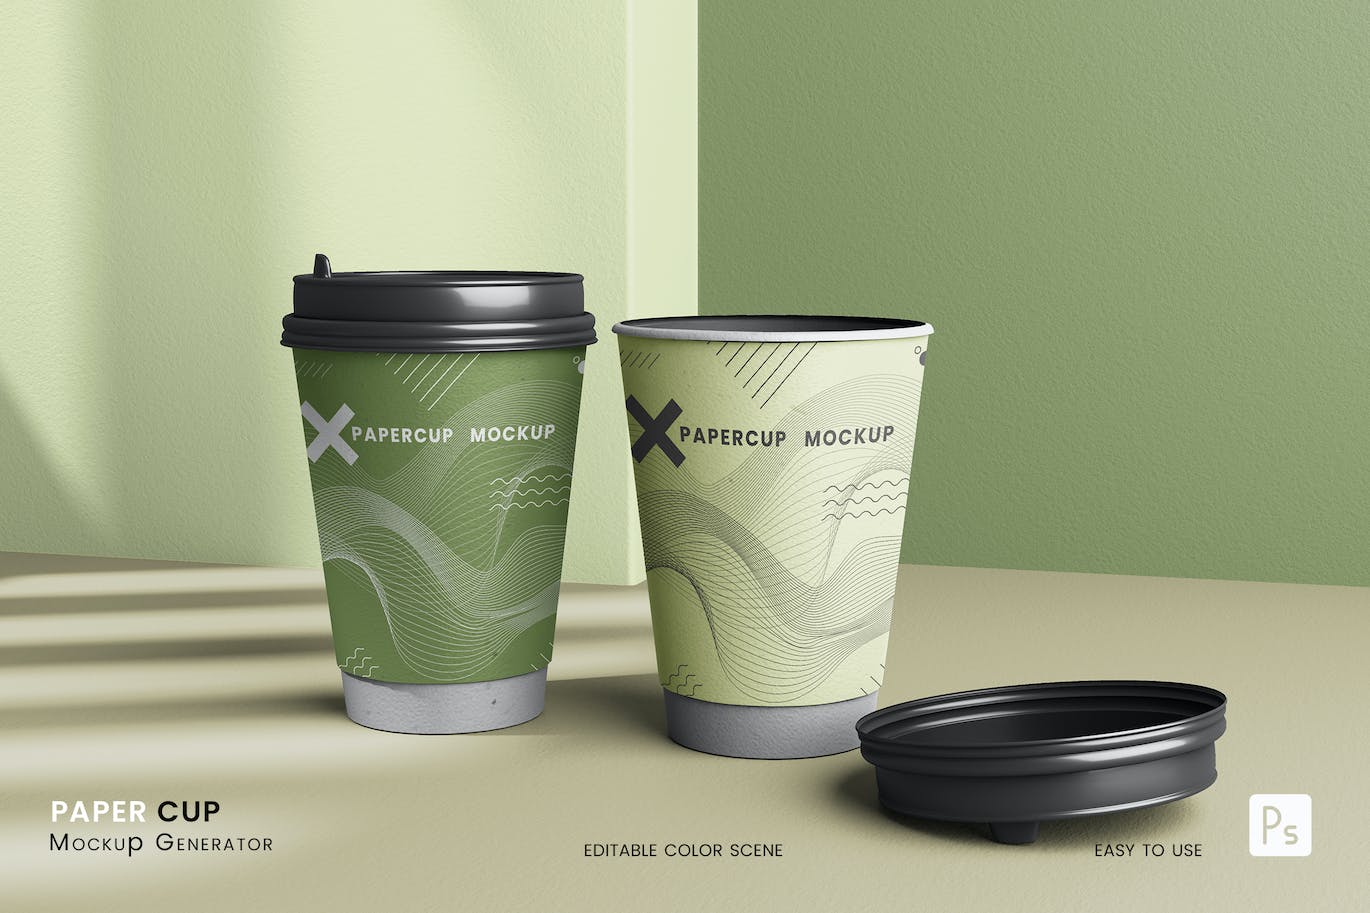 咖啡奶茶纸杯包装设计样机 (PSD)